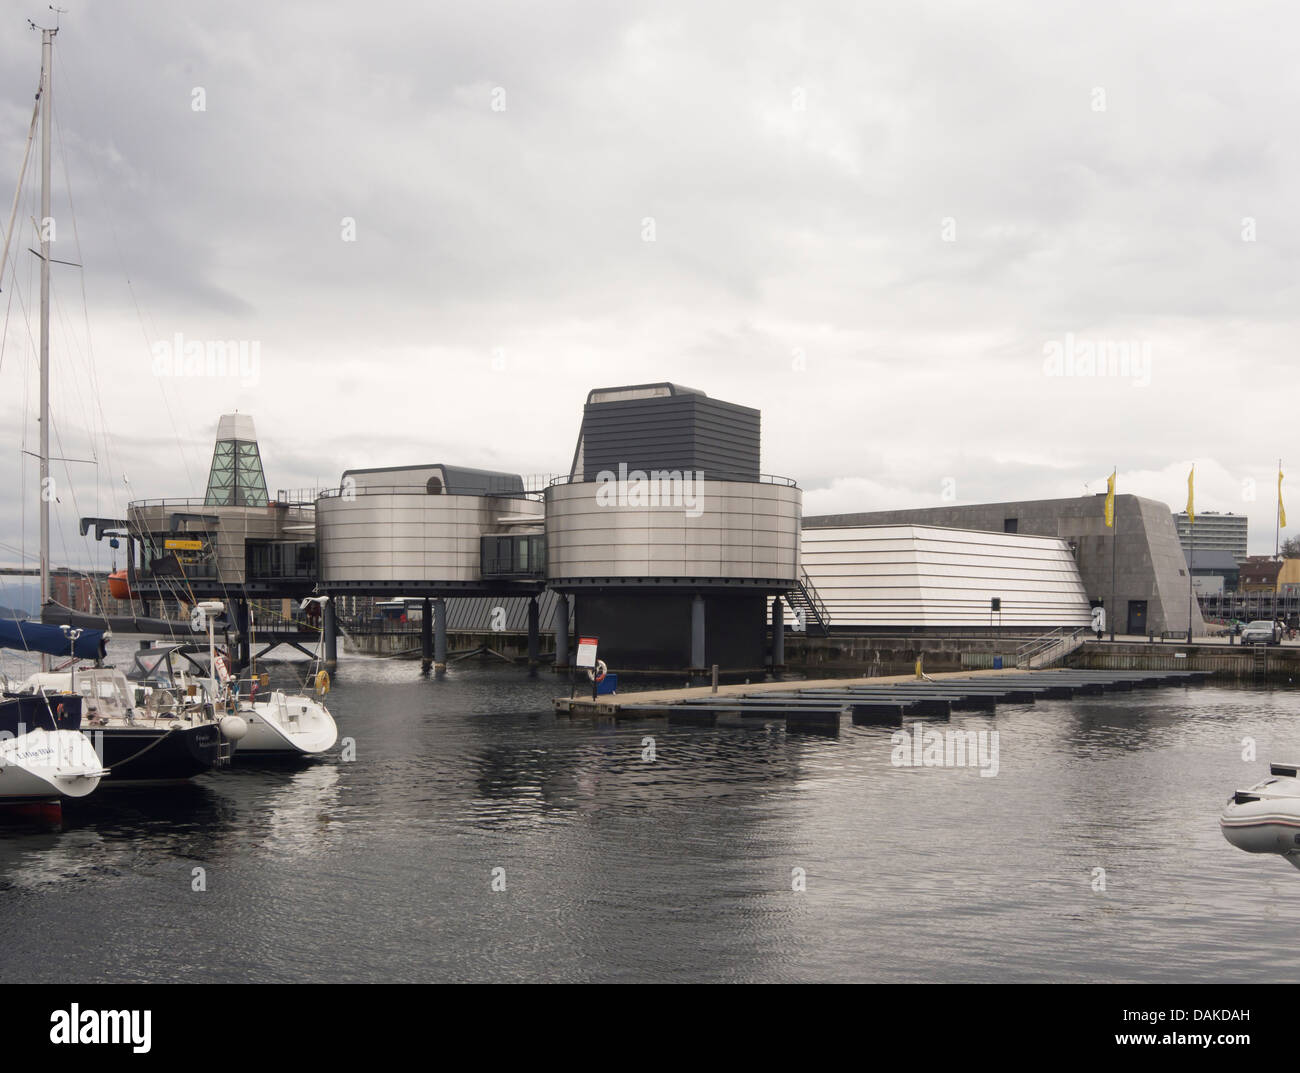 Musée de l'huile dans le port de Stavanger en Norvège, l'extérieur du bâtiment Banque D'Images